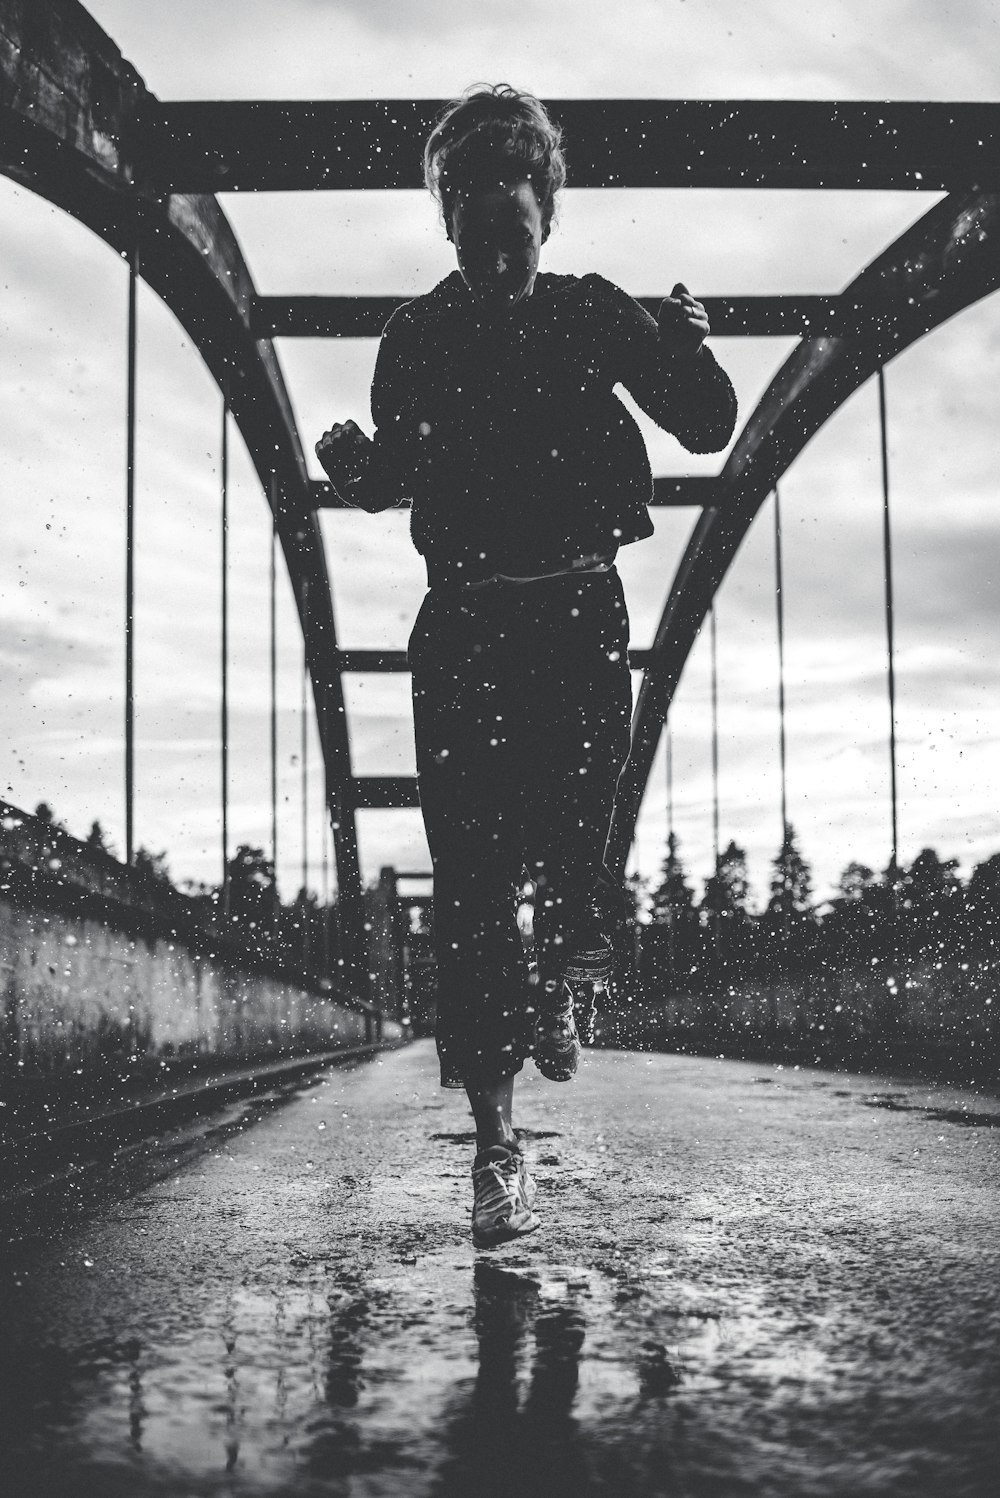 fotografia in scala di grigi di una donna che corre sul ponte